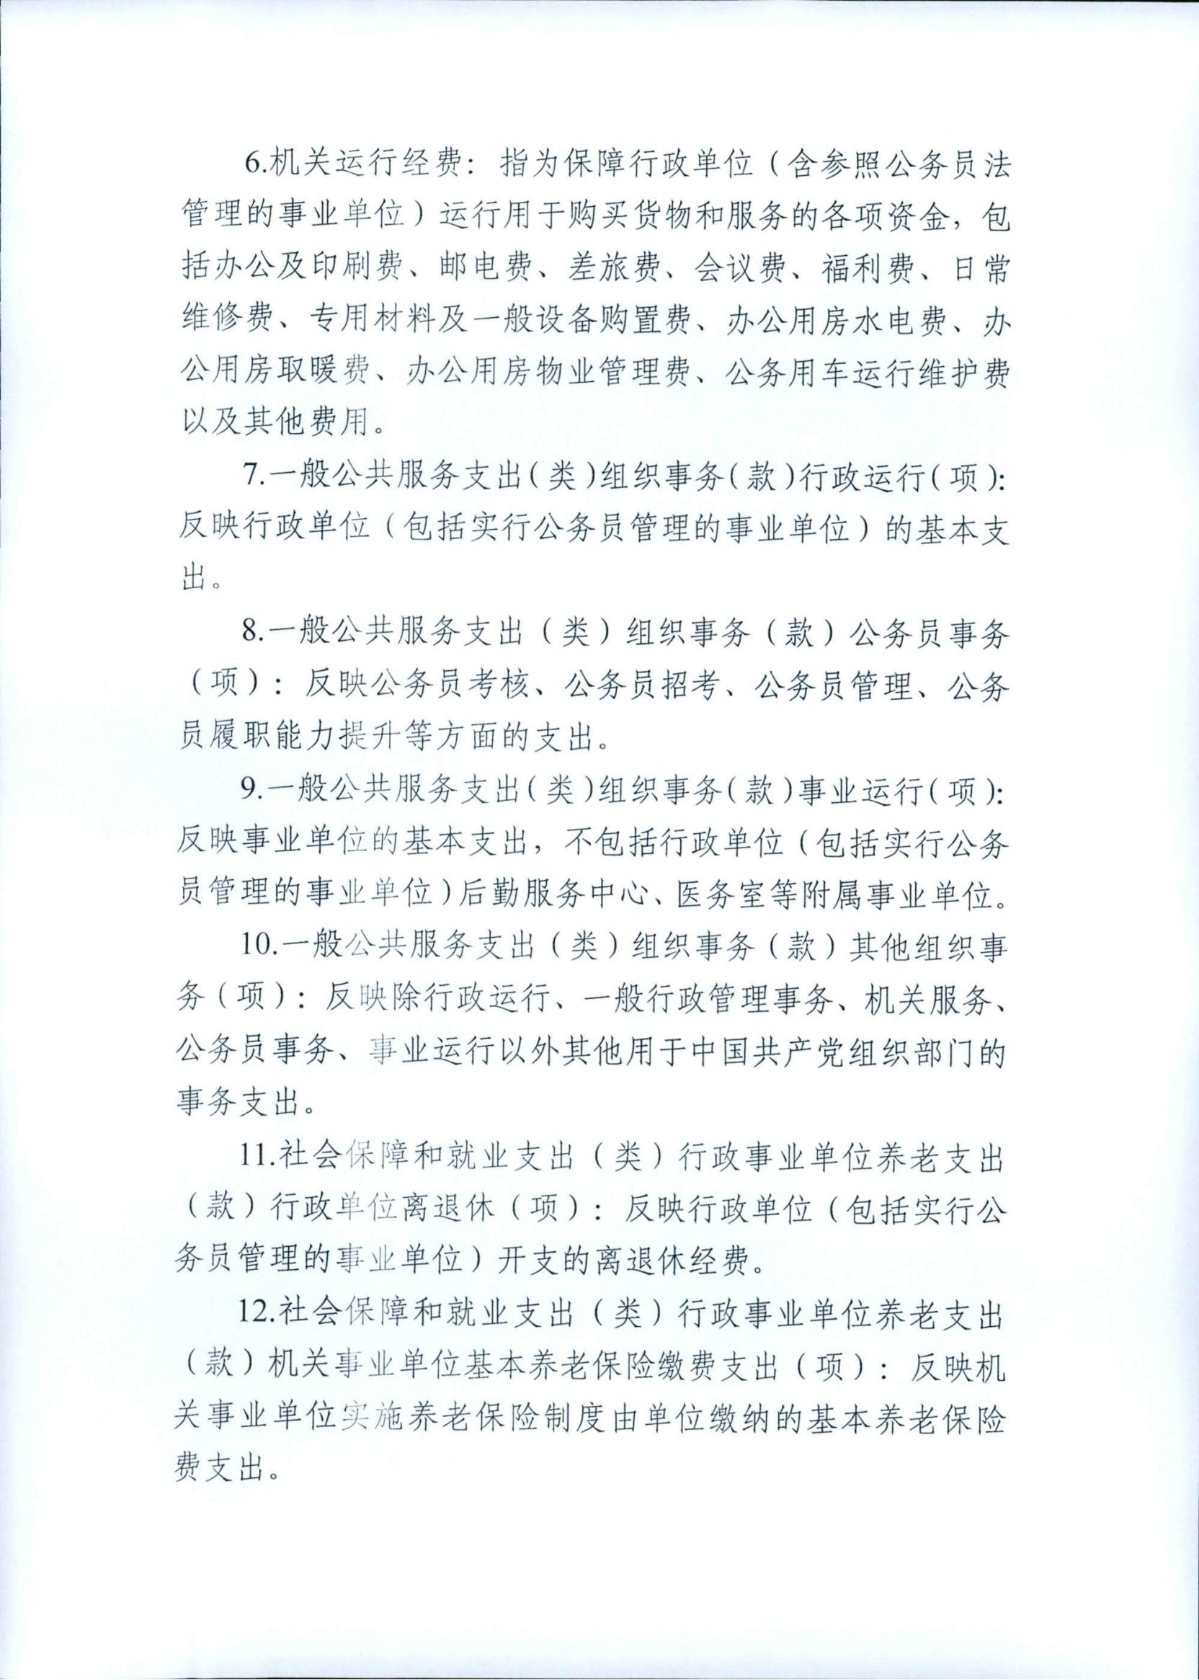 中共浙江省委组织部2022年部门预算_11.jpg